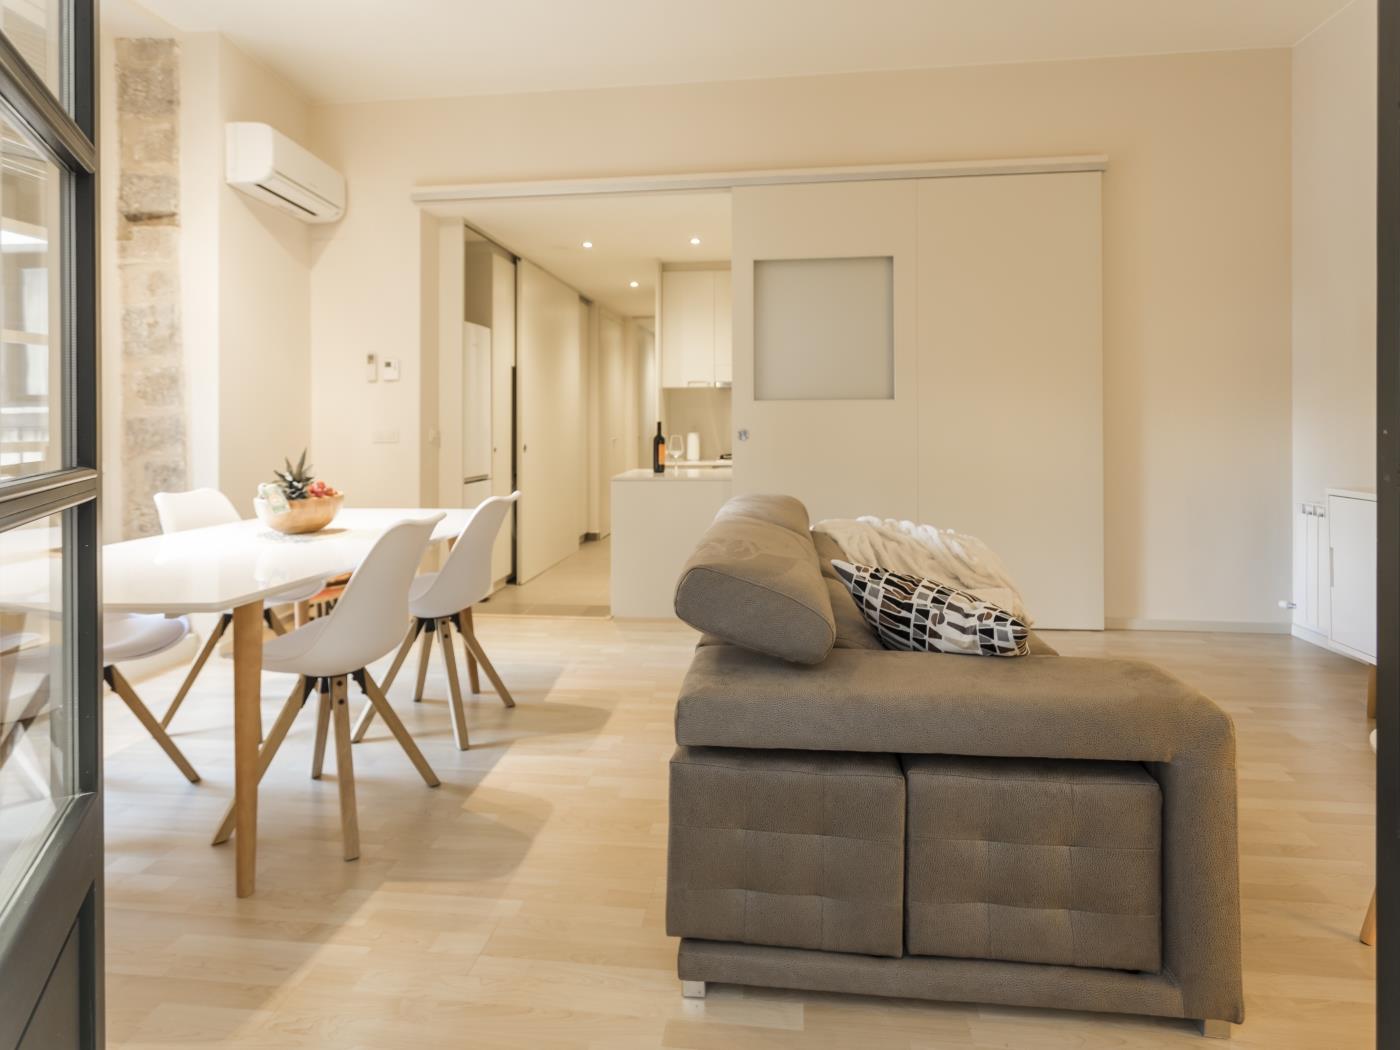 Cort Reial 3B - Apartament de vacances a Girona | Bravissimo a Girona